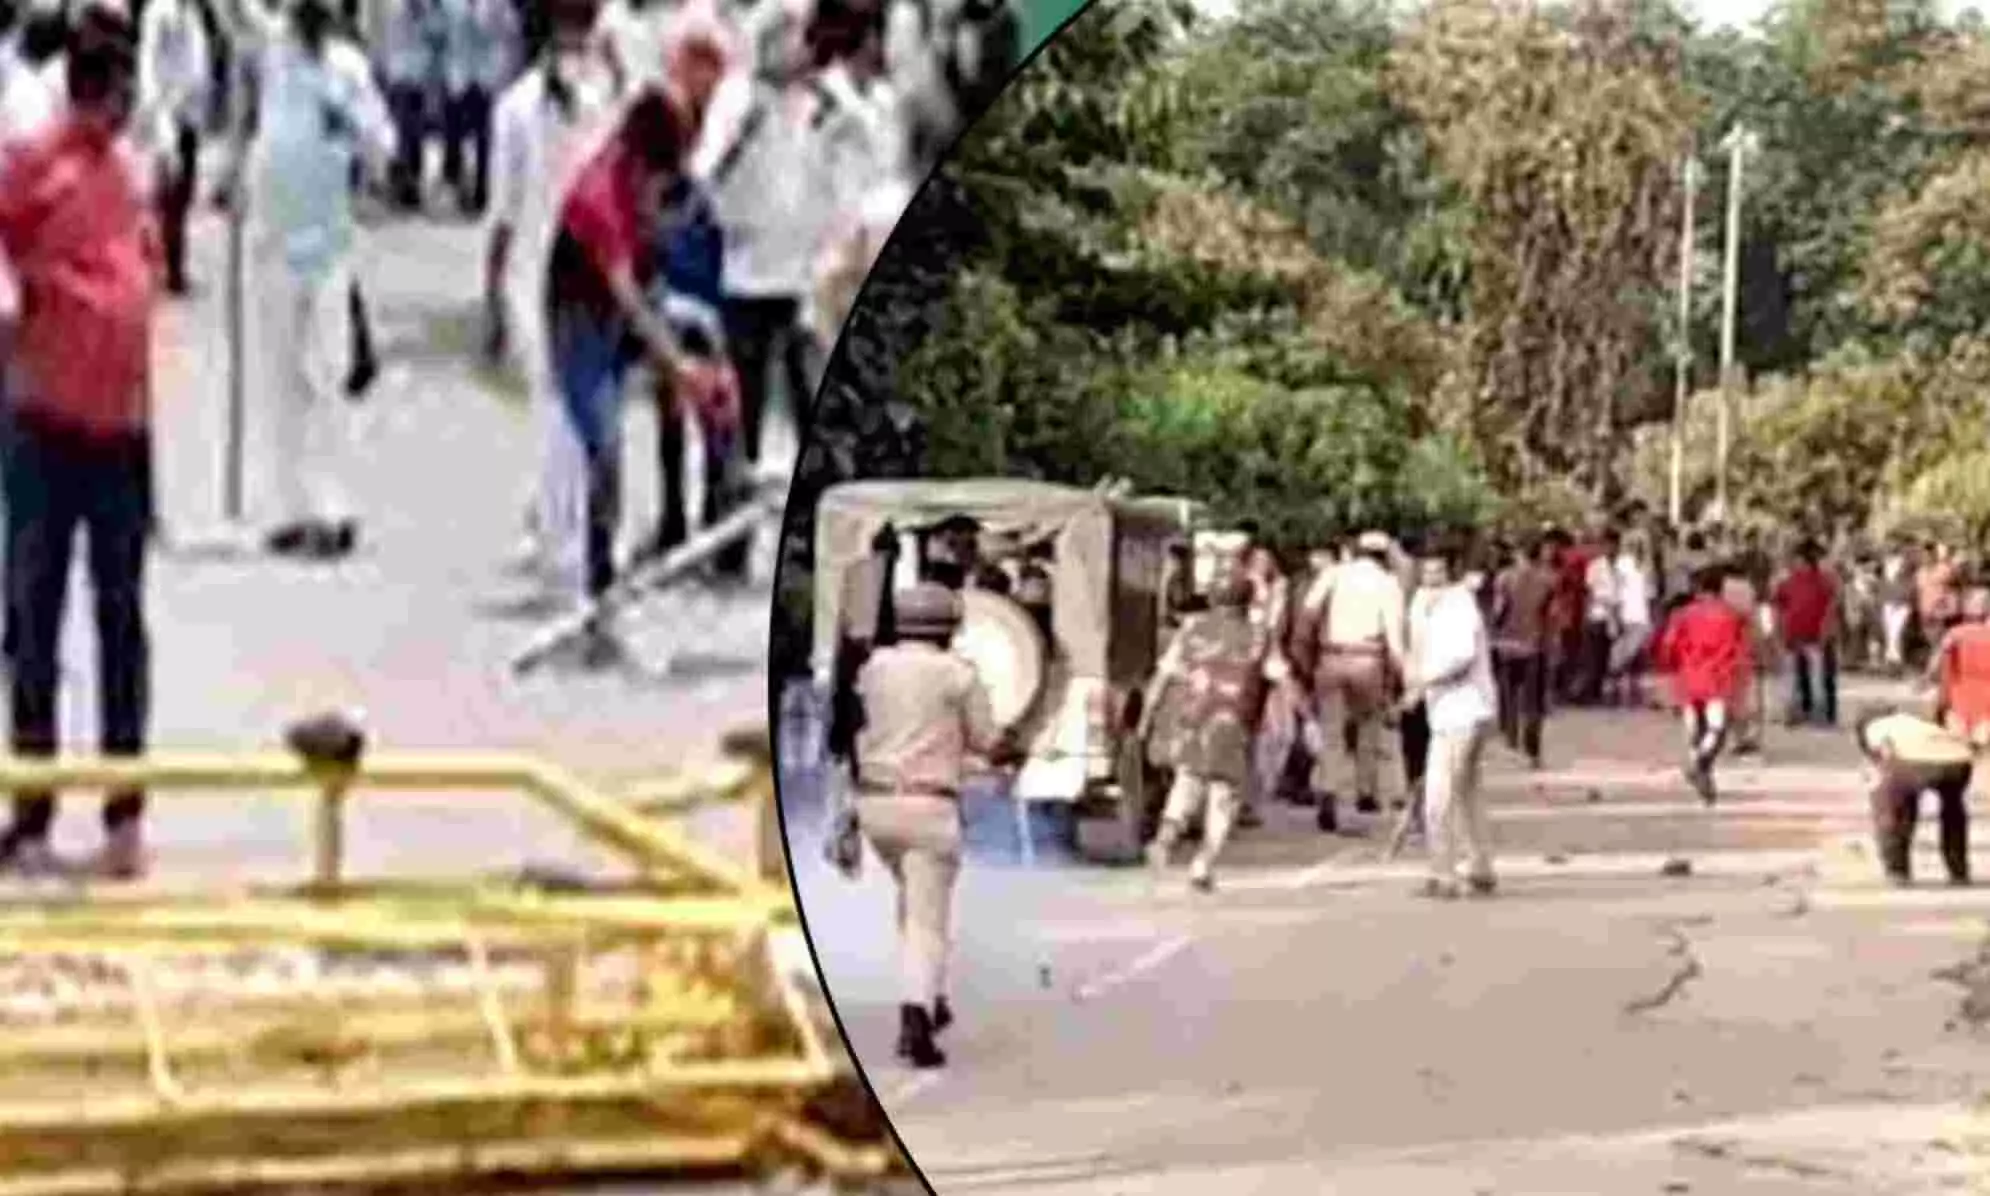 असम-मेघालय सीमा पर हिंसक झड़प, फायरिंग में 6 की मौत, VIDEO वायरल होने के बाद हिंसा भड़की, 7 जिलों में मोबाइल इंटरनेट सस्पेंड